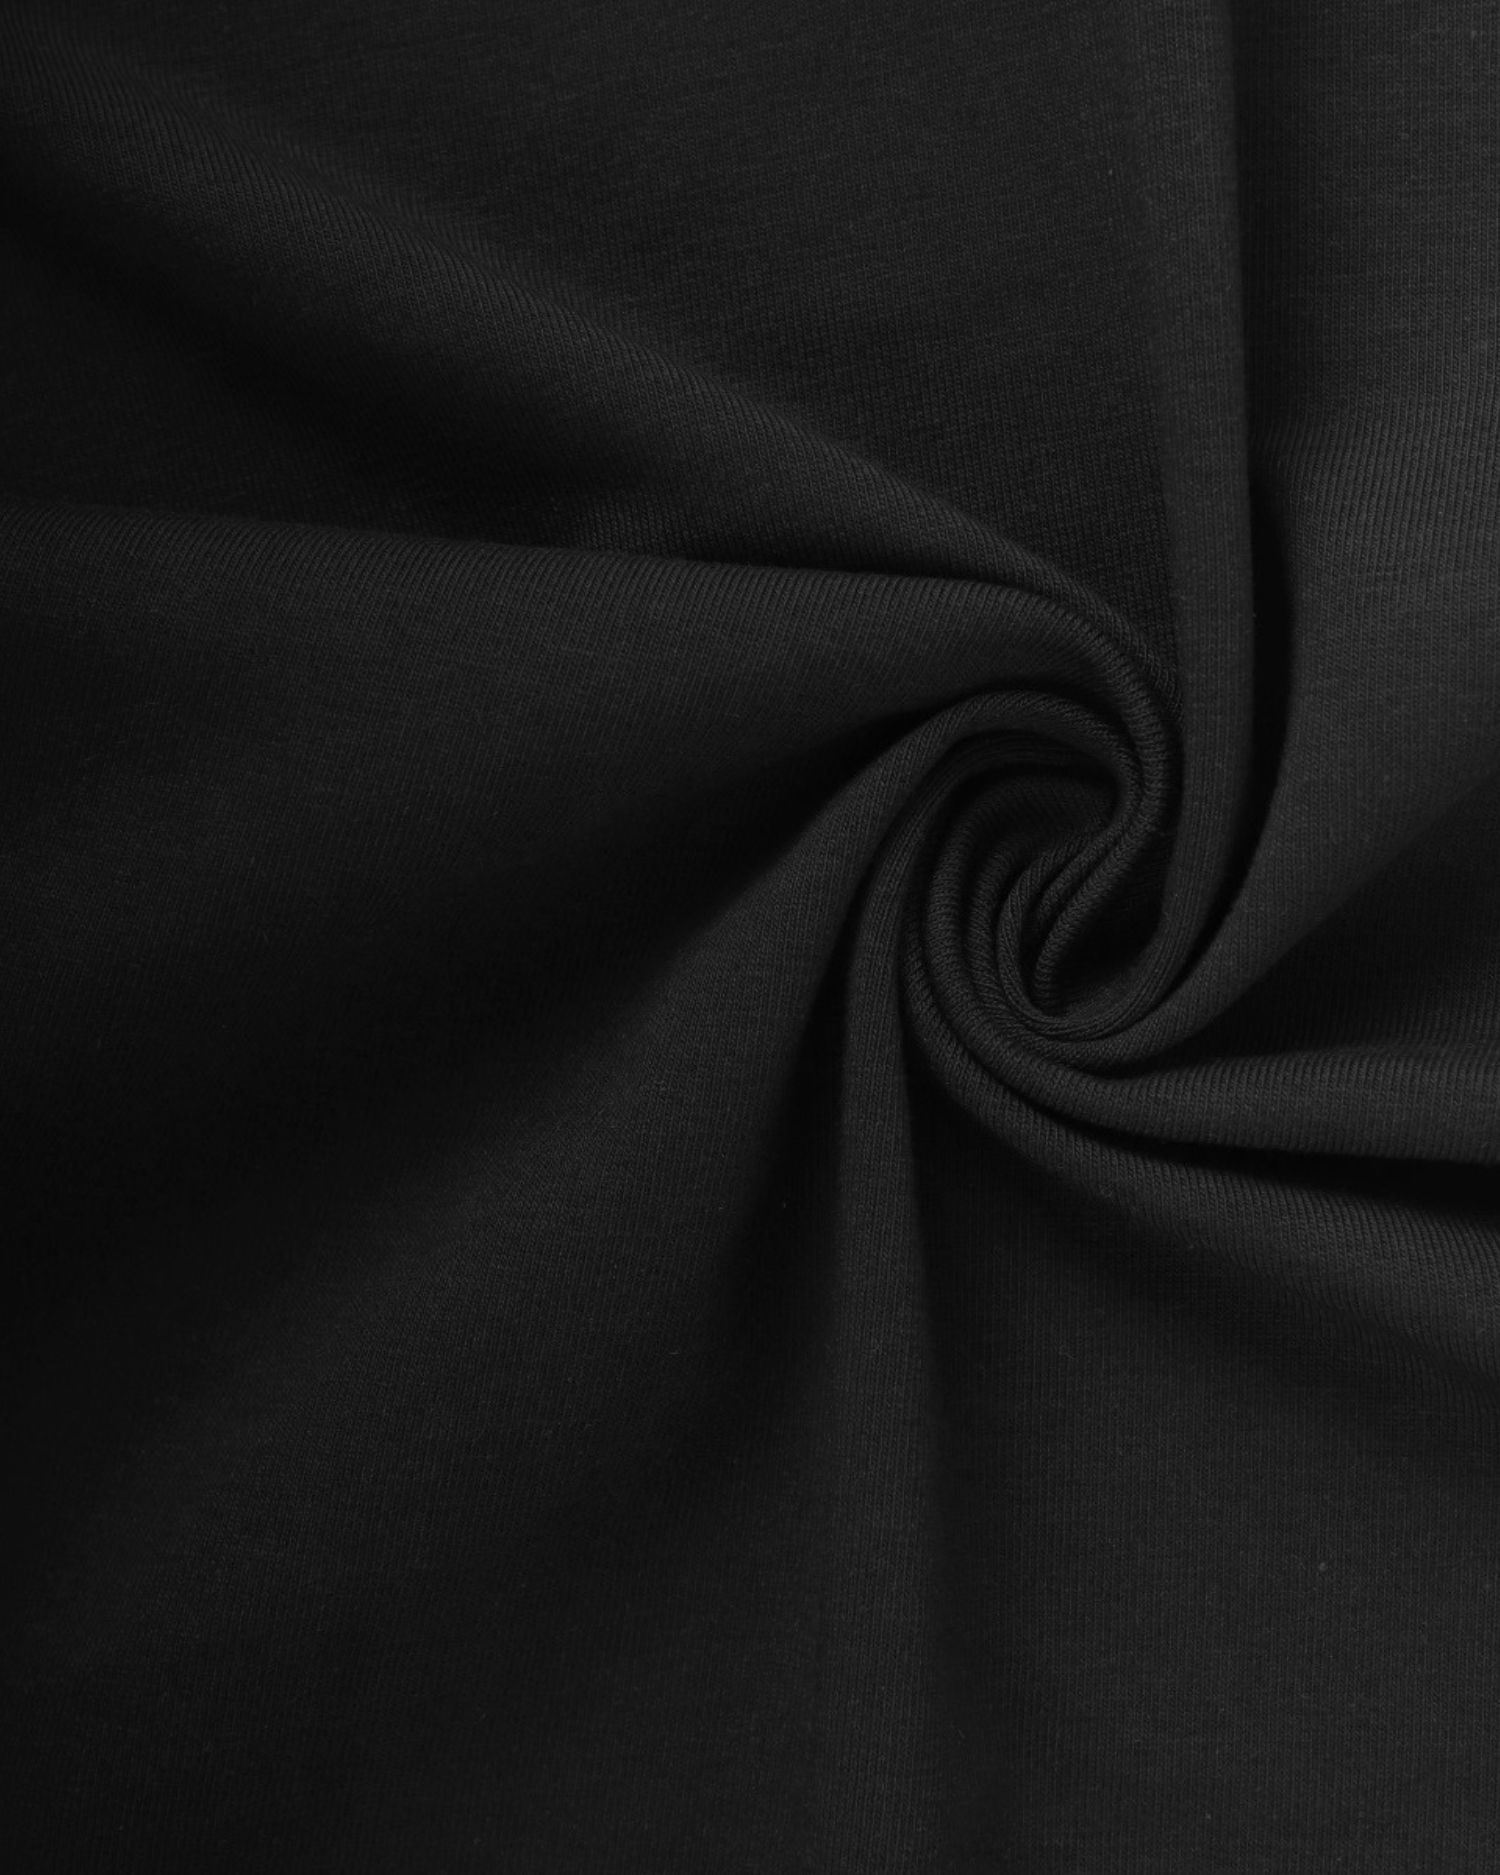 Baumwoll-Jersey mit Elasthan, 1 Meter, 235 g/m2, schwarz